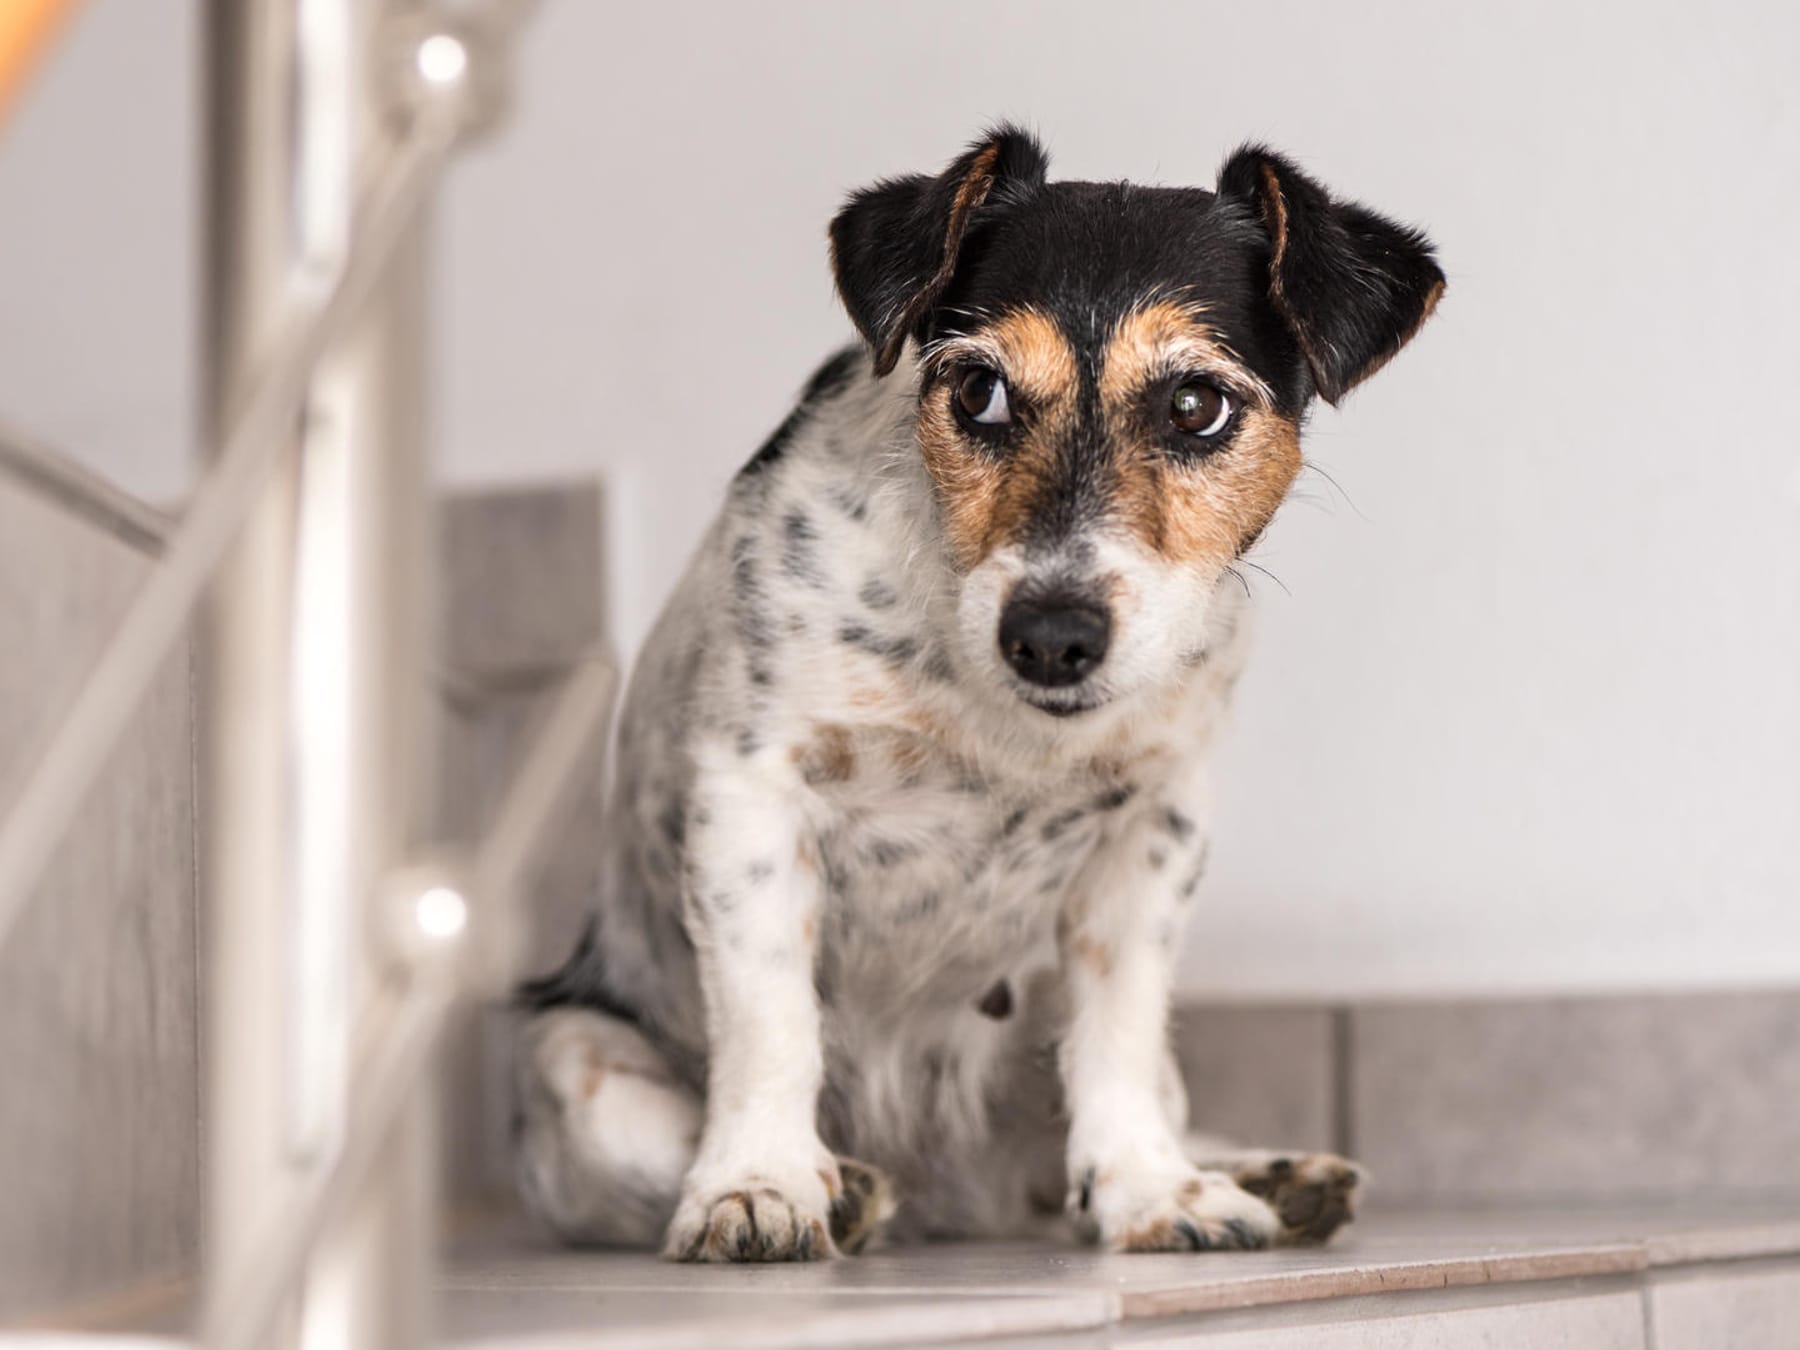 Gesundheitsgefahr: Hunde sollten keine Treppen steigen